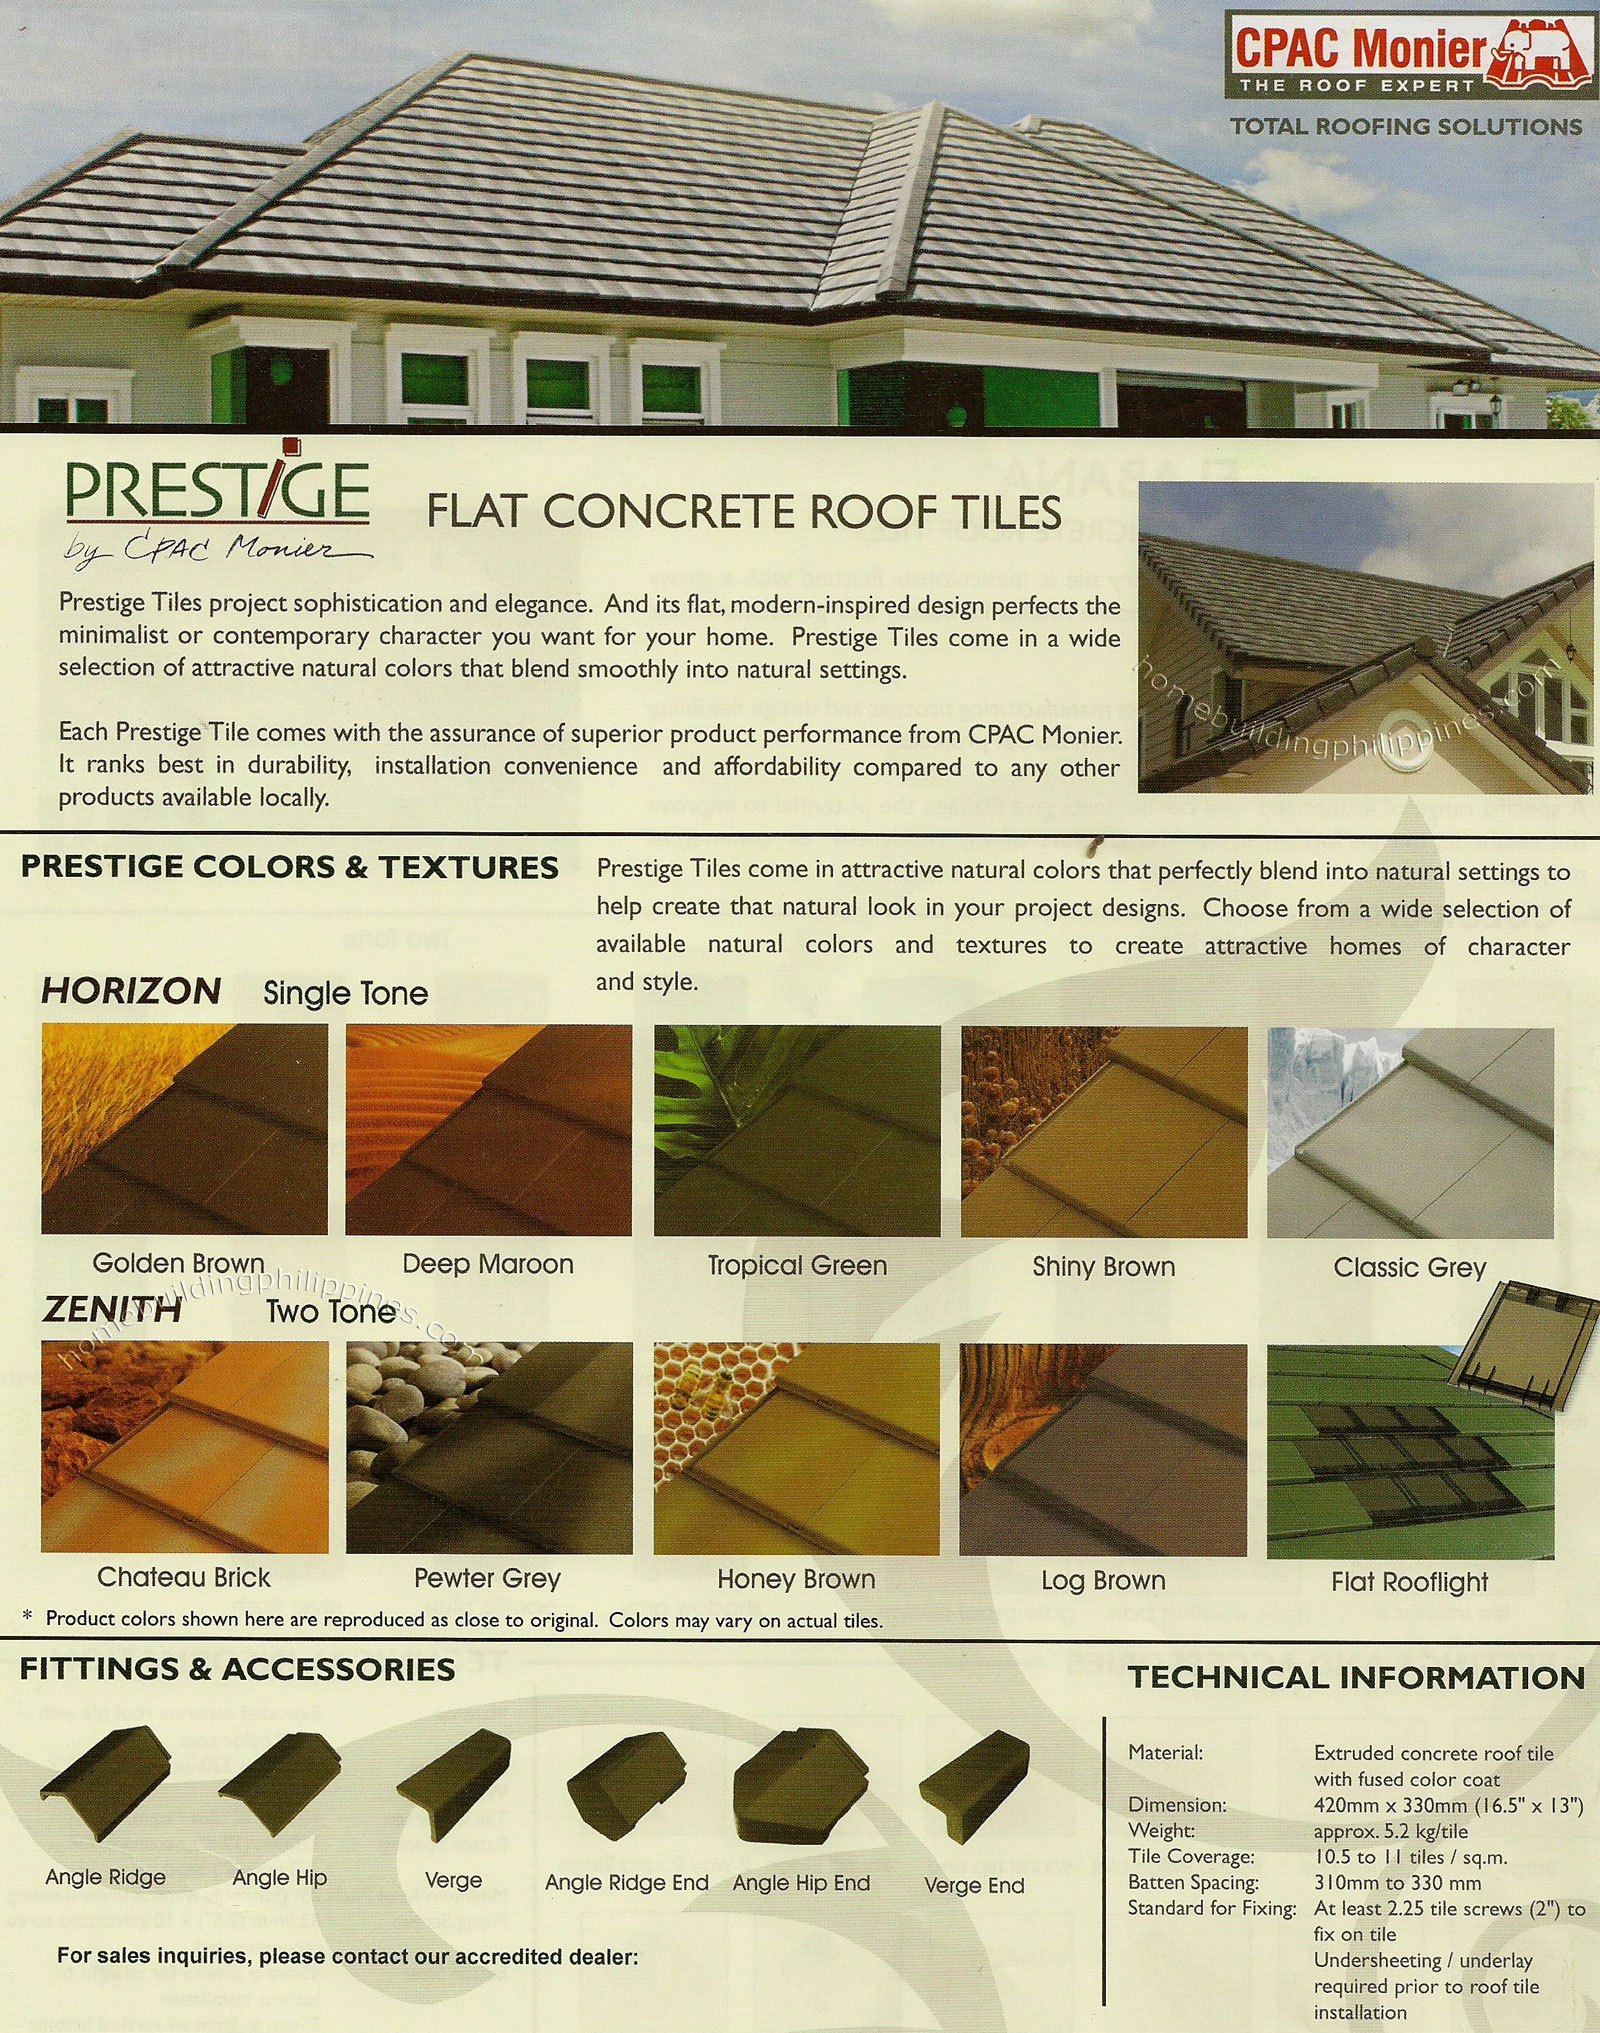 Prestige Flat Concrete Roof Tiles